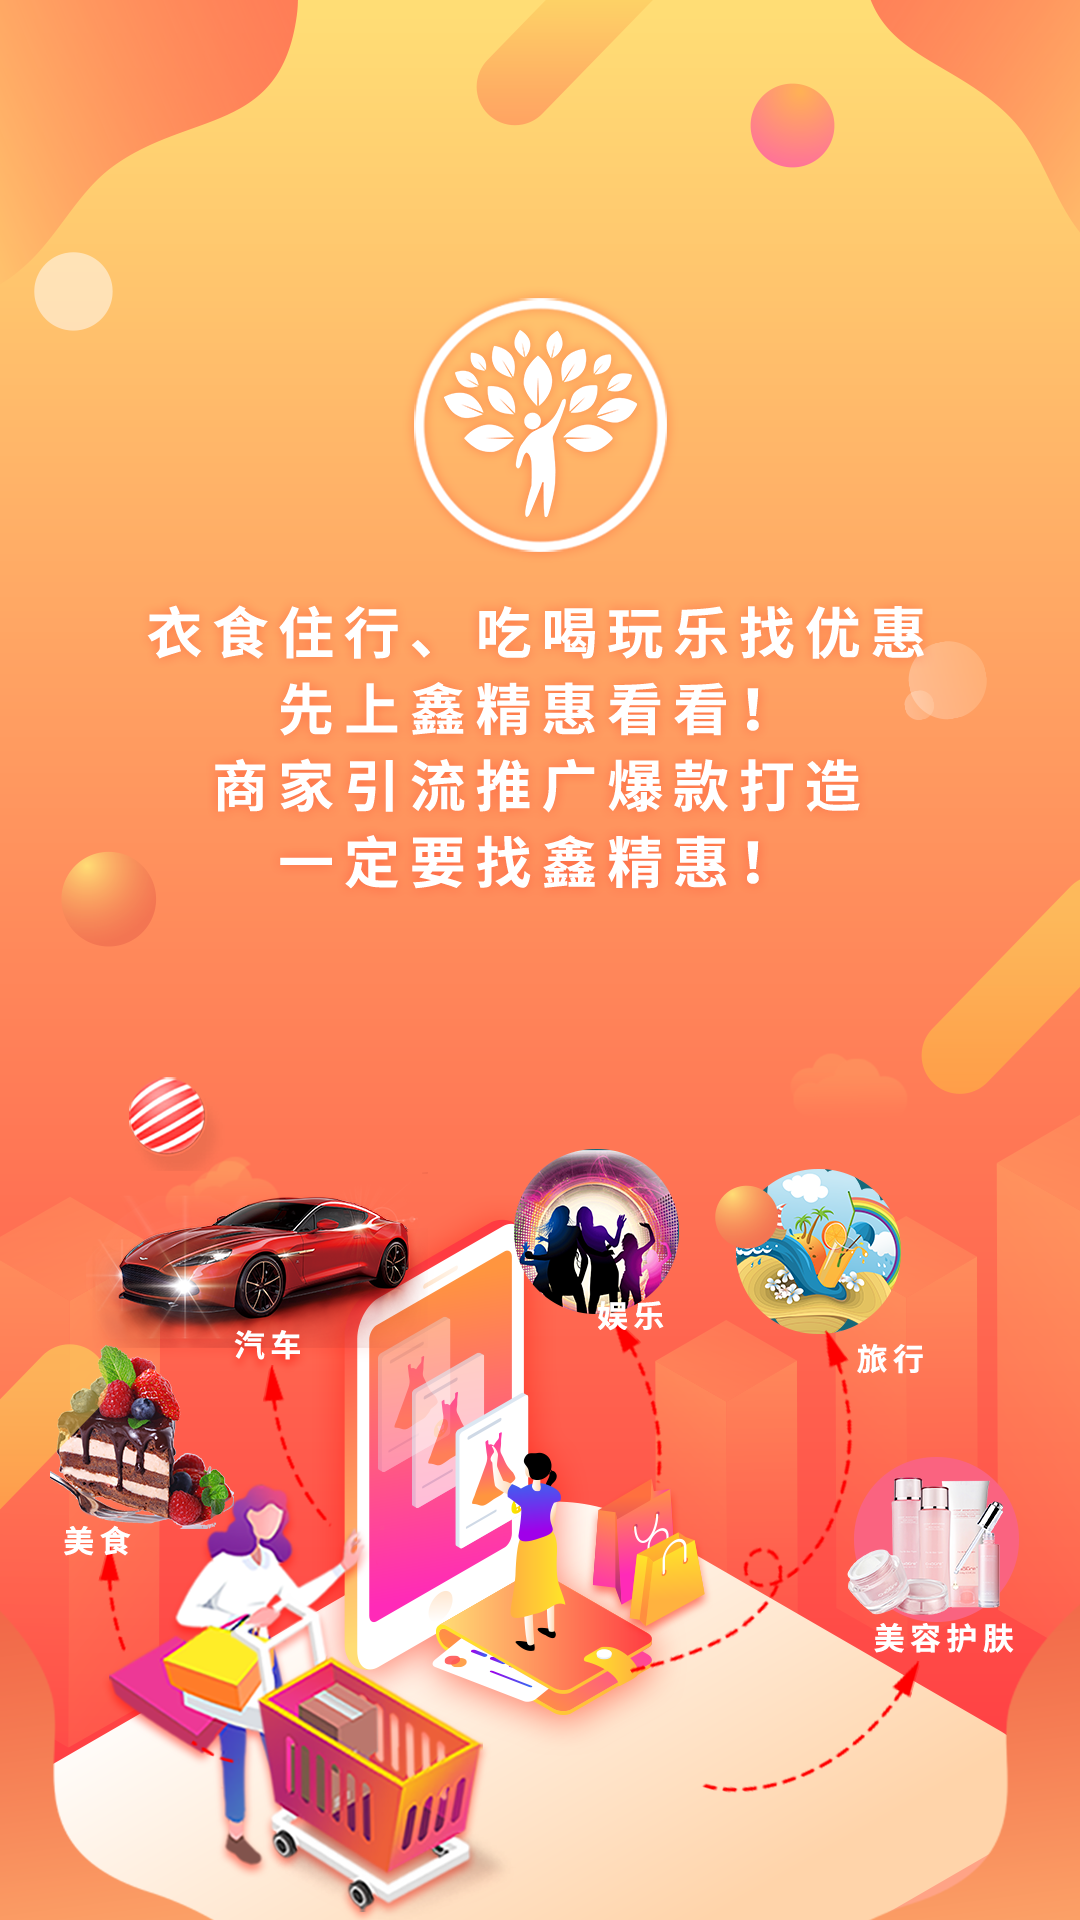 鑫精惠淘客系统加油app开发